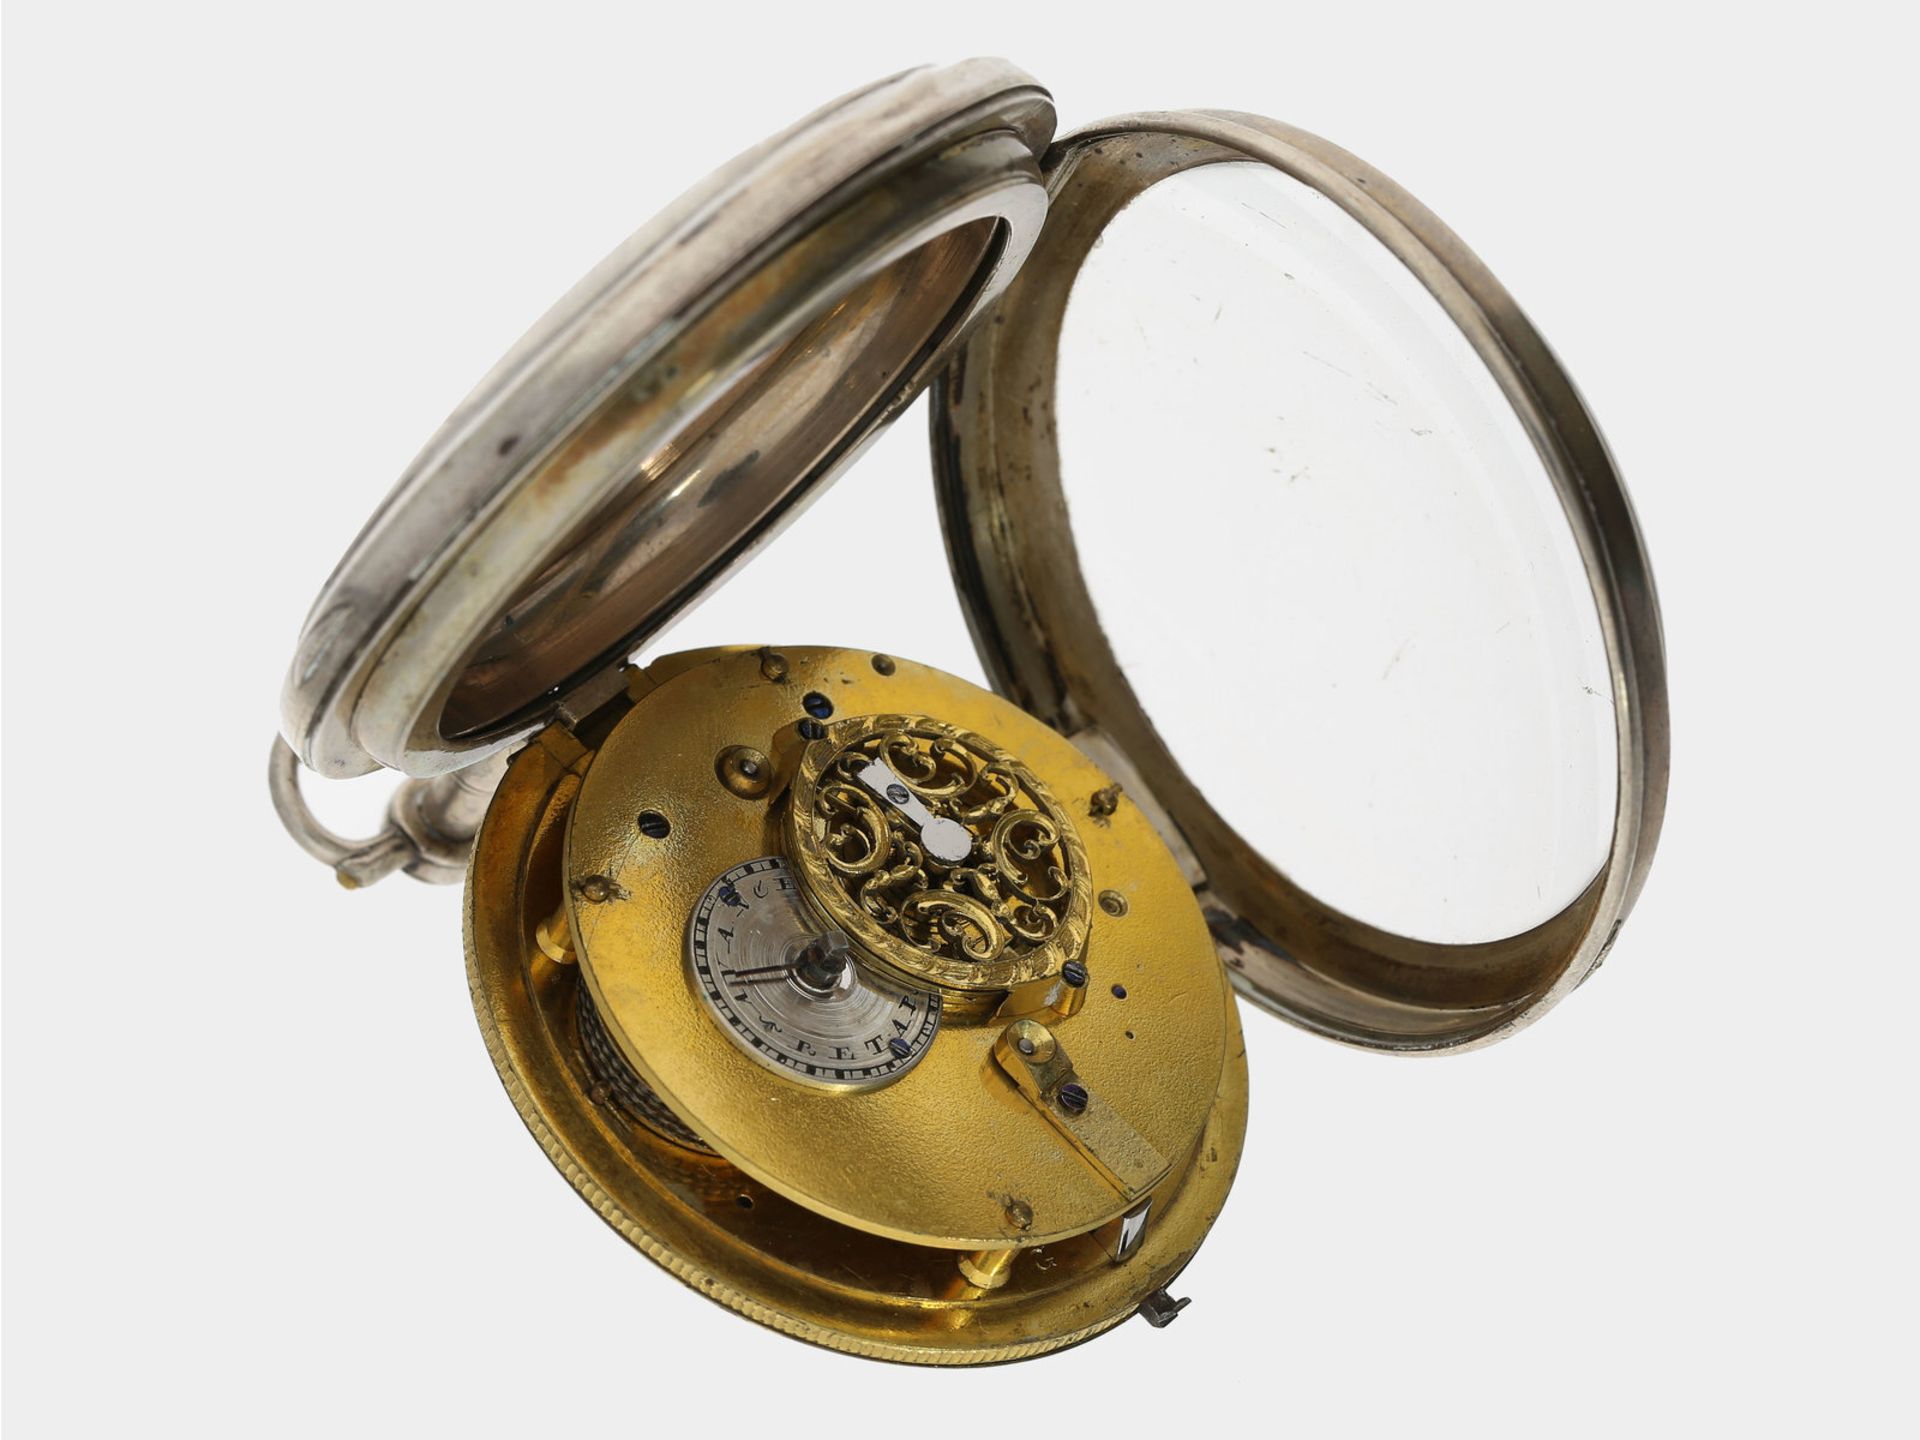 Taschenuhr: interessante Spindeluhr mit Wecker auf Glocke, ca. 1800 - Bild 2 aus 2